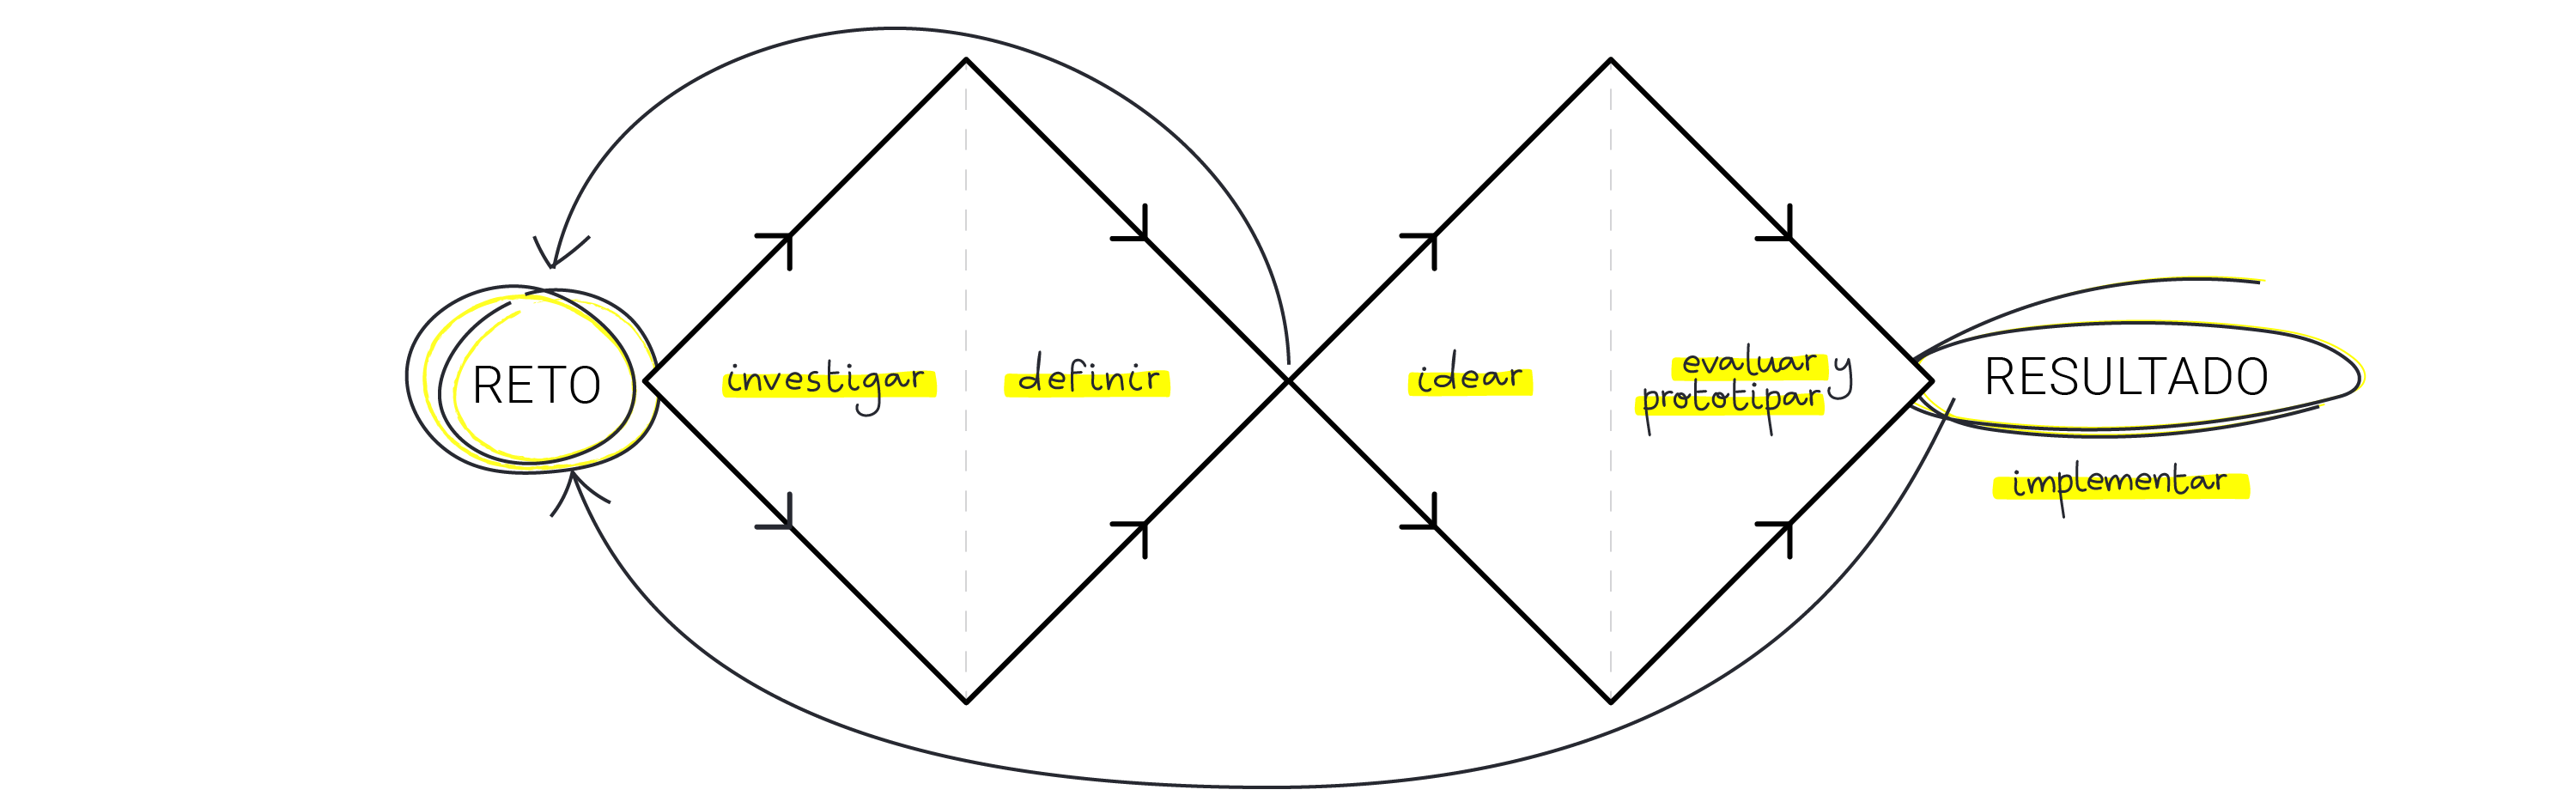 Ilustración de la metodología doble diamante con las fases de investigación, definición, ideación y evaluación.